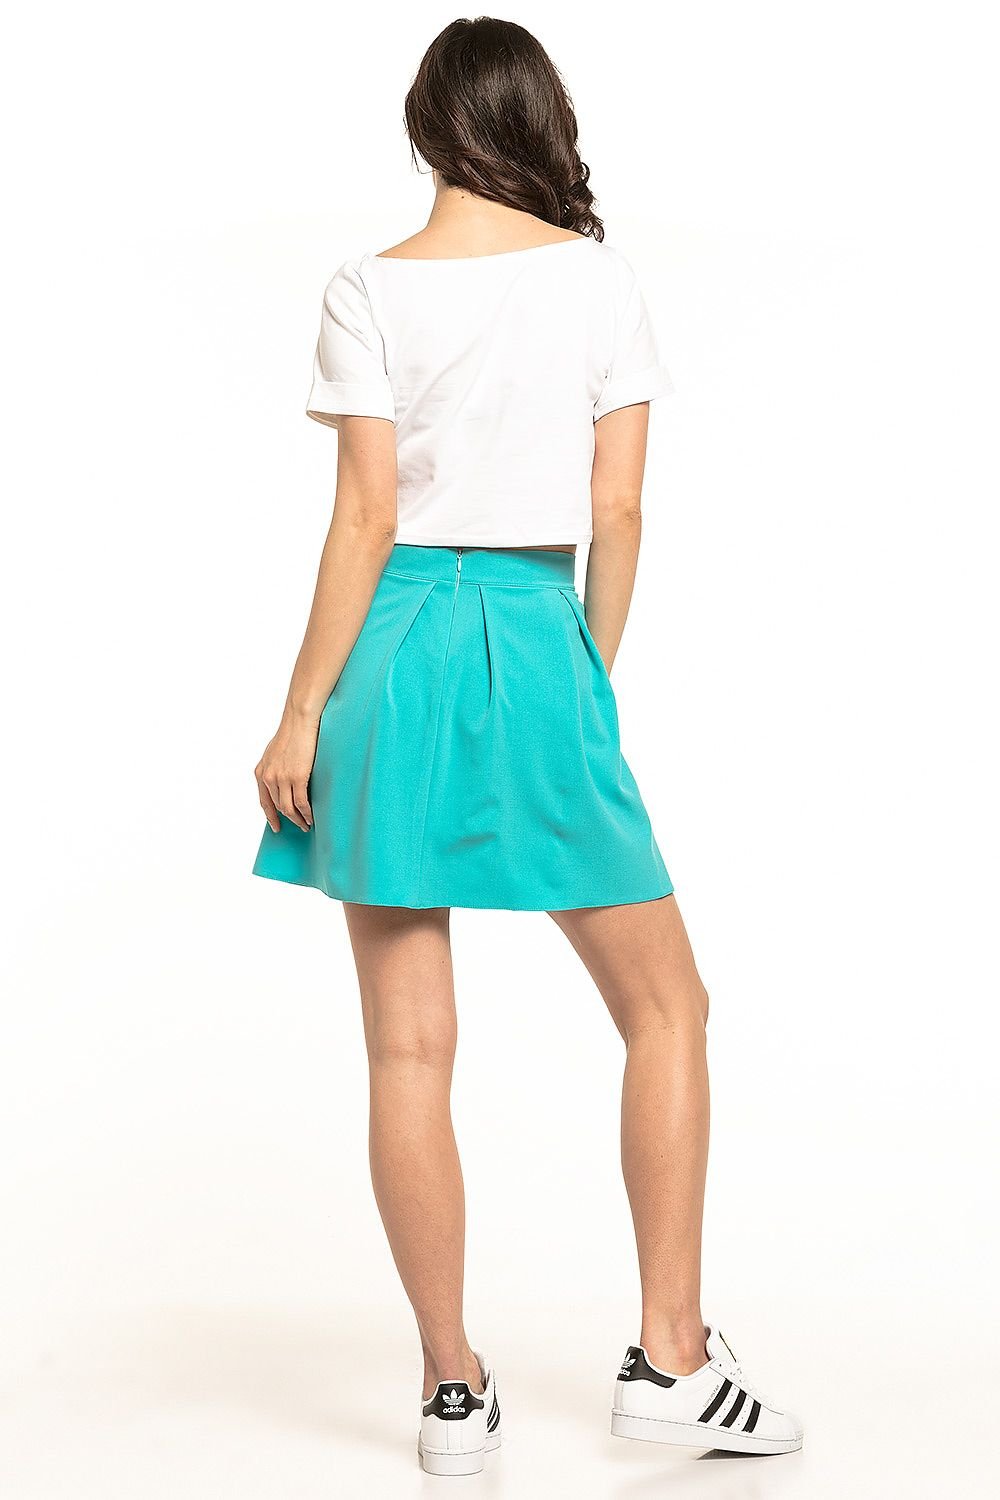 Jupe courte trapèze en tissu satiné couleur turquoise, parfaite pour une tenue décontractée ou chic.